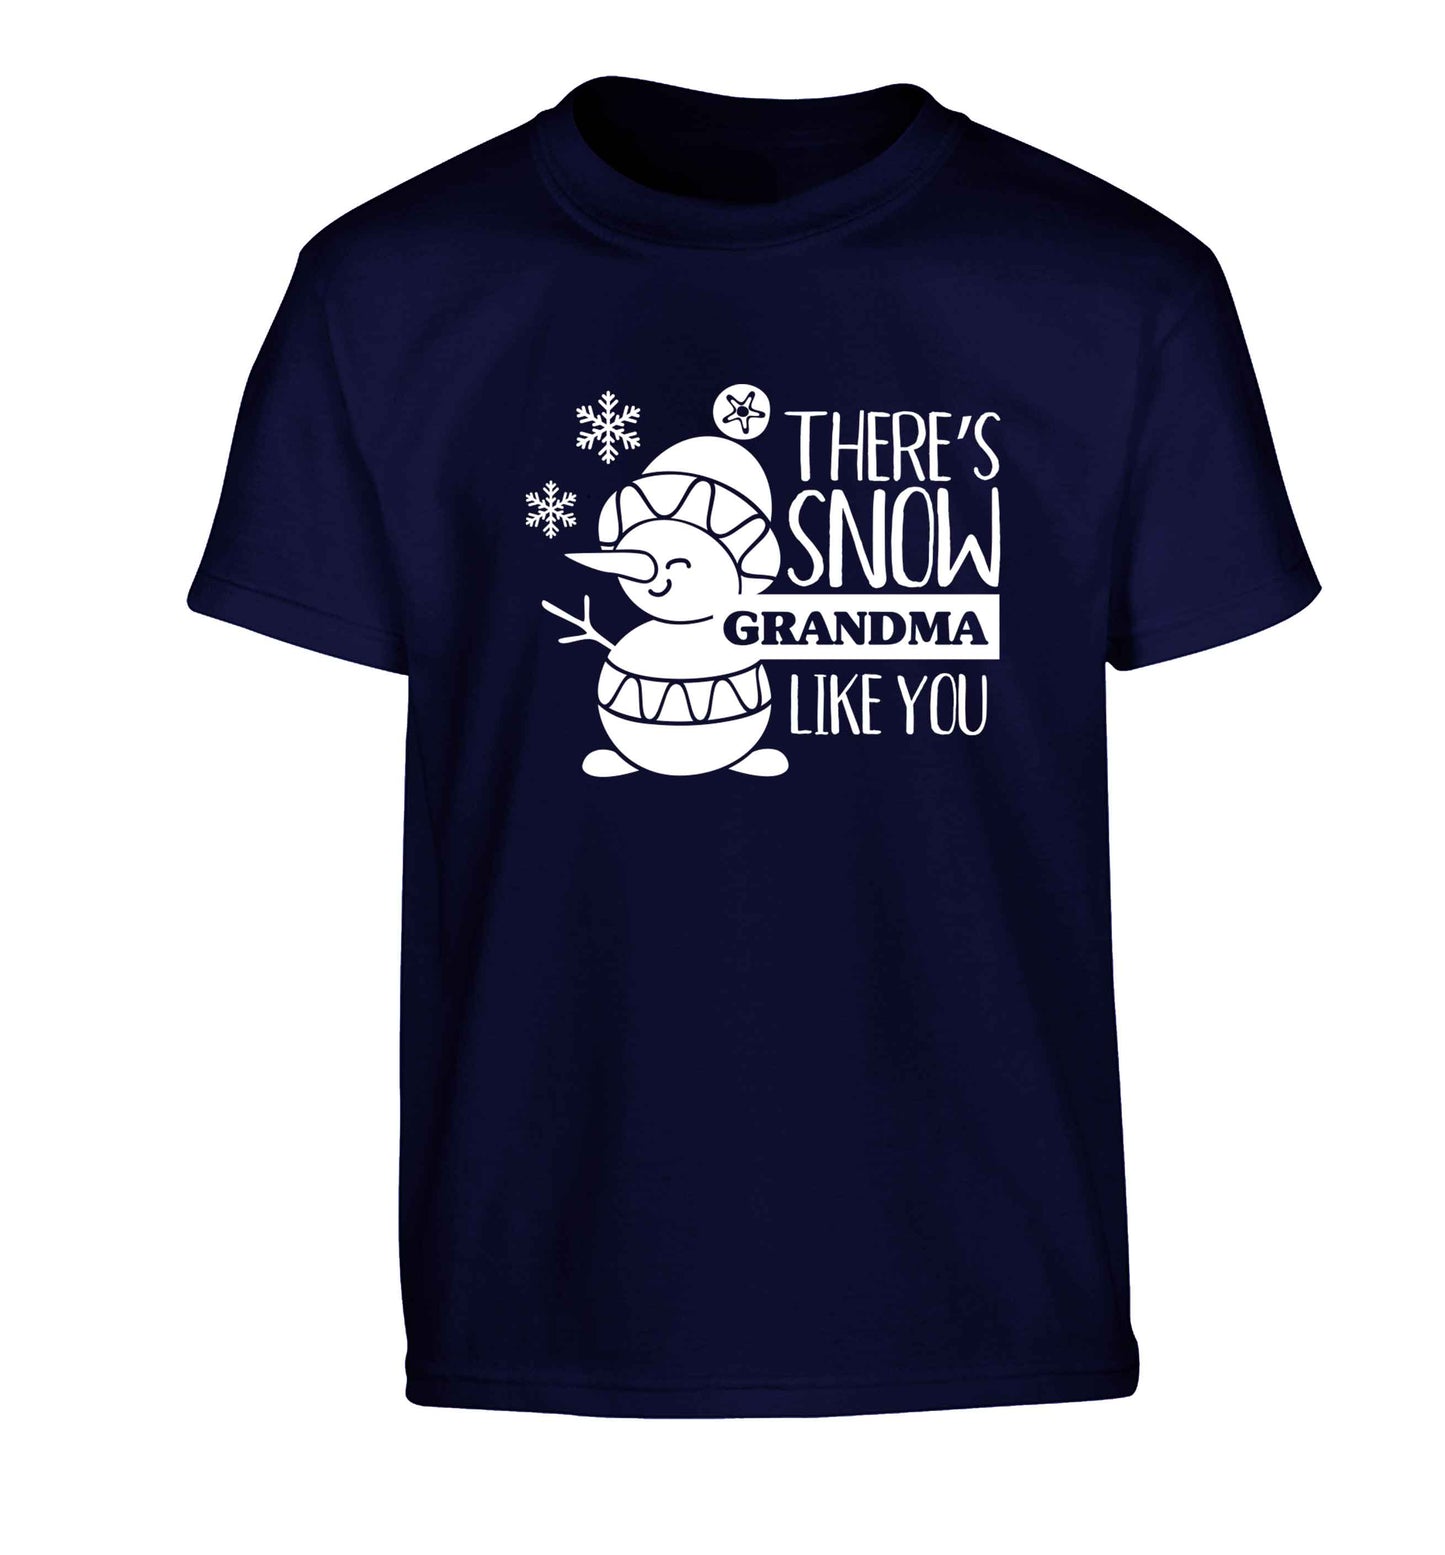 There's snow grandma like you Children's navy Tshirt 12-13 Years